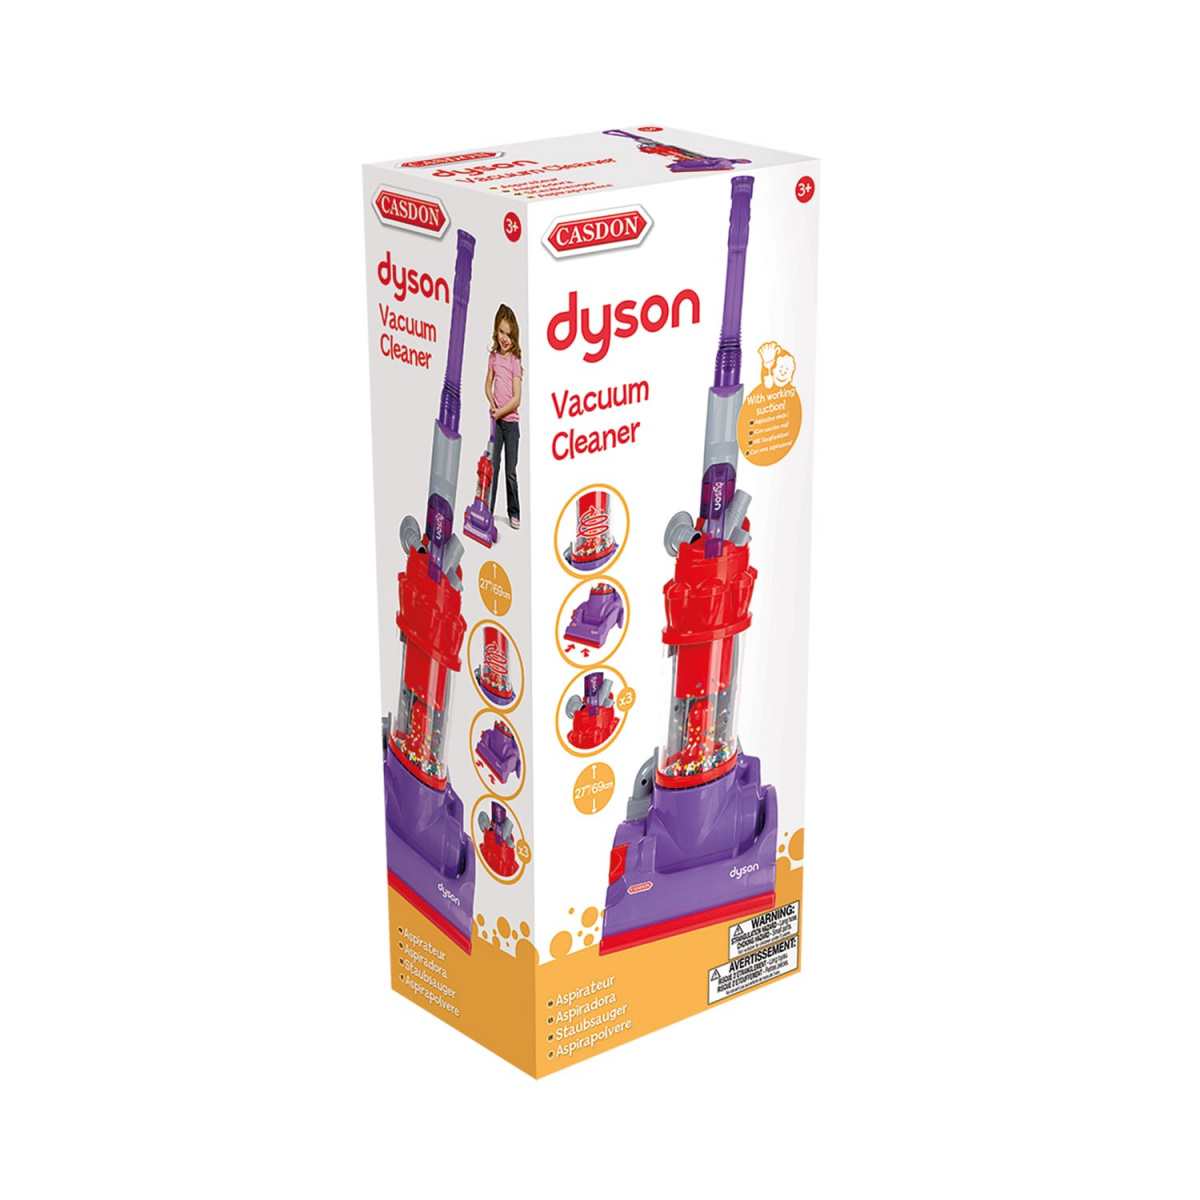 Іграшковий пилосос Casdon Dyson DC14 (610) - фото 4